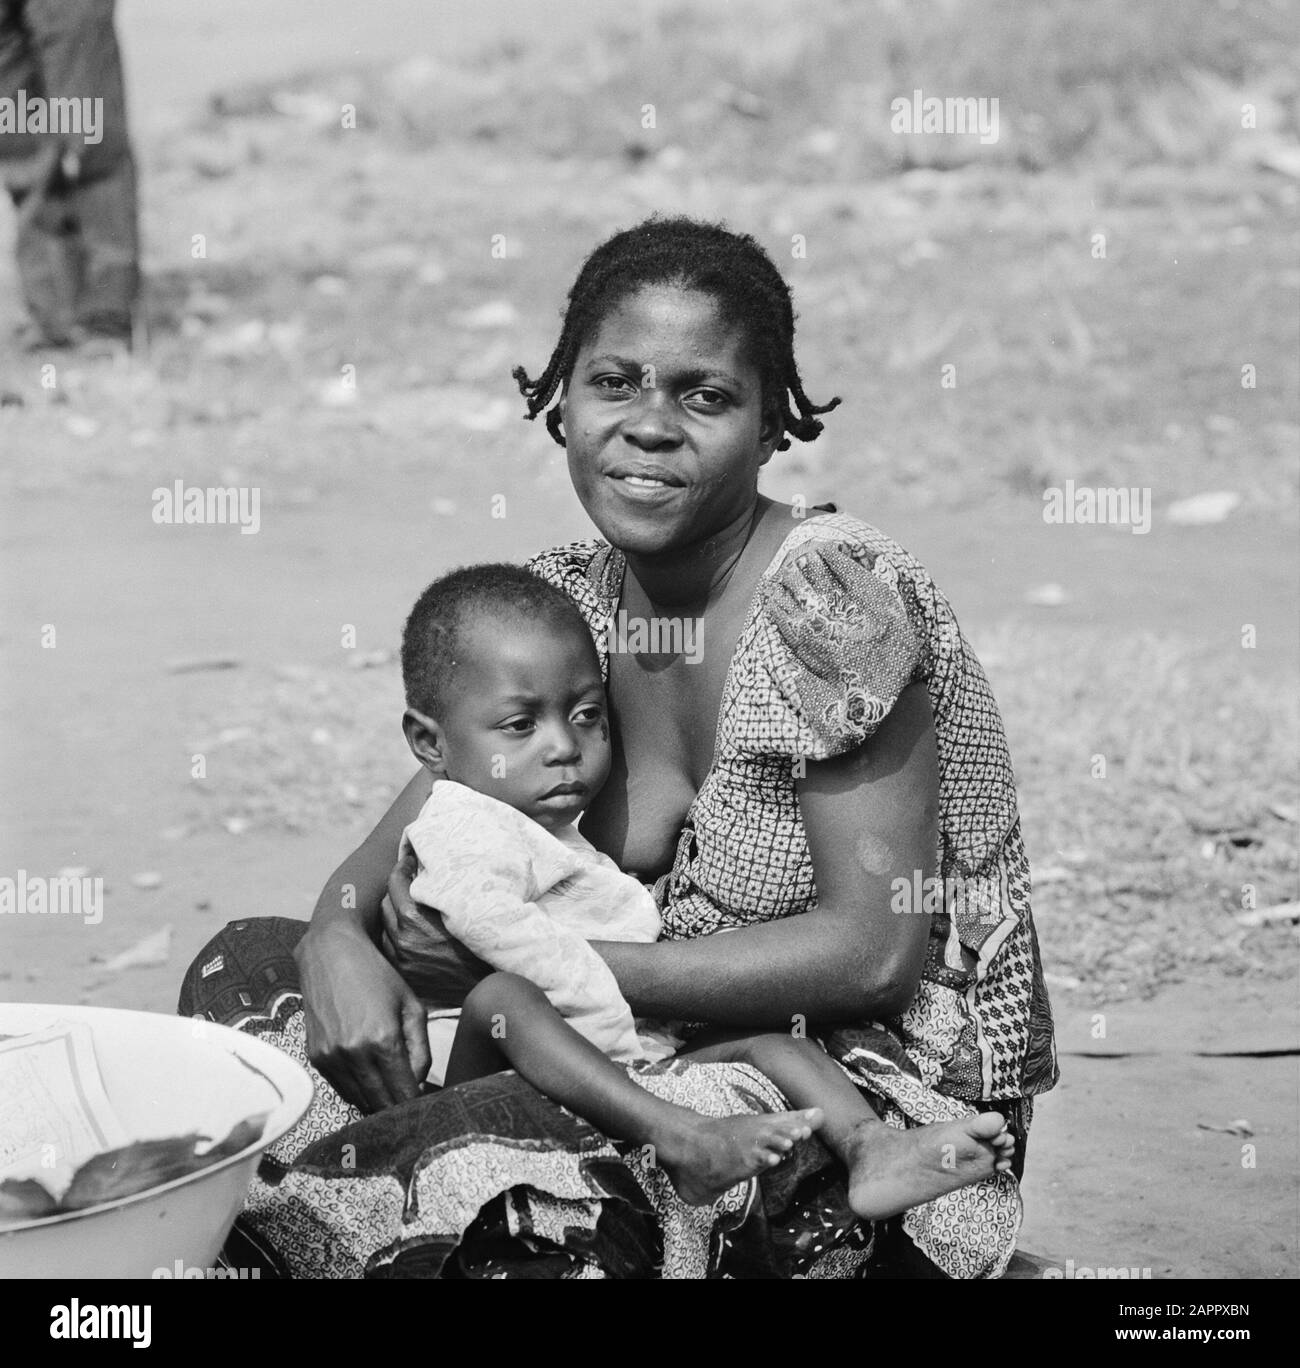 Zaire (früher Belgischer Kongo)-Statue in Kinshasa; Mutter und Kind Datum: 24. Oktober 1973 Ort: Kongo, Kinshasa, Zaire Schlüsselwörter: Kinder, Frauen Stockfoto